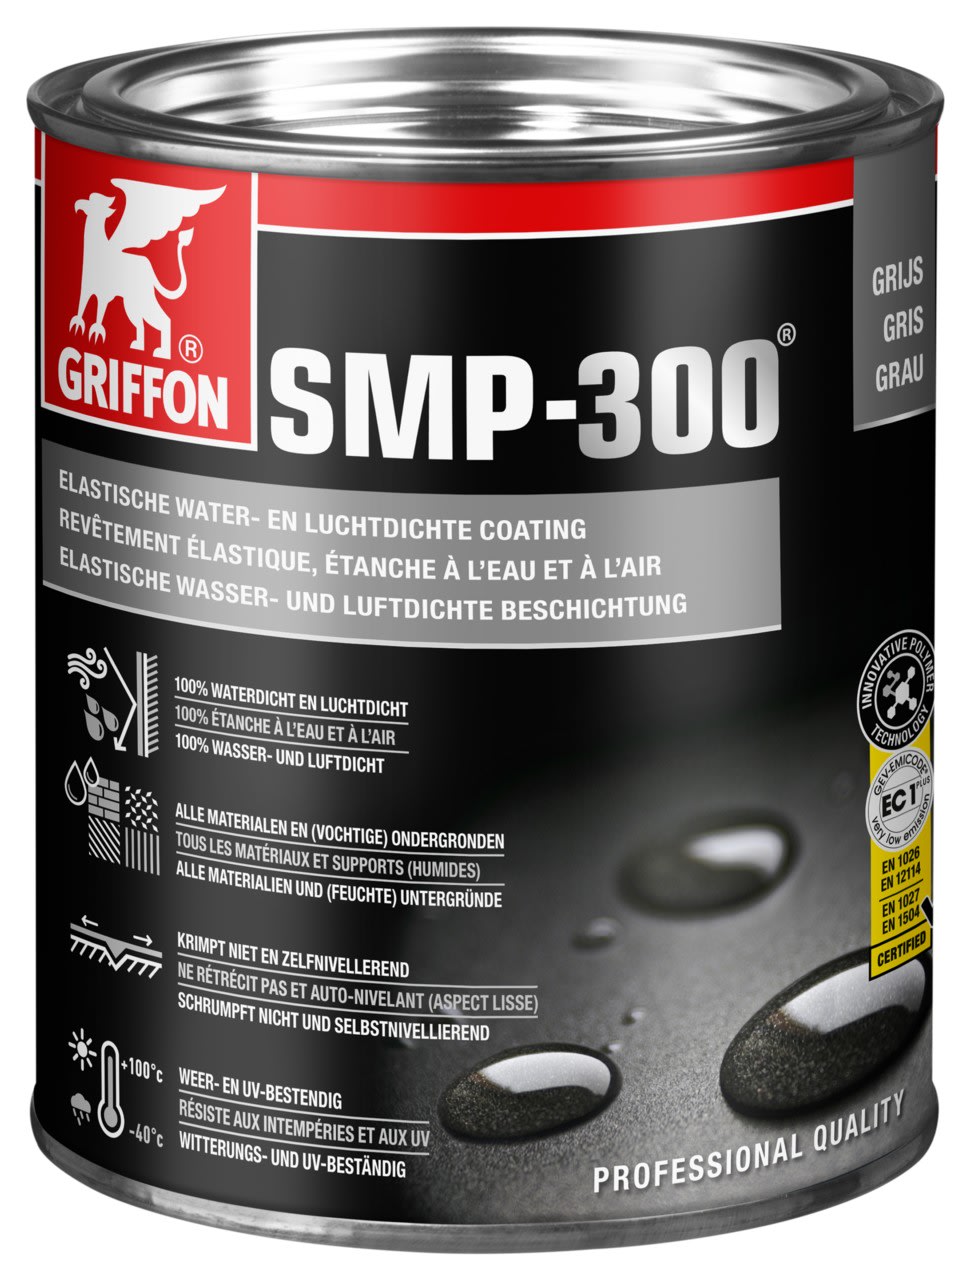 Griffon - SMP-300 Gris Enduit elastique etanche a l'eau et a l'air Pot 1 kg